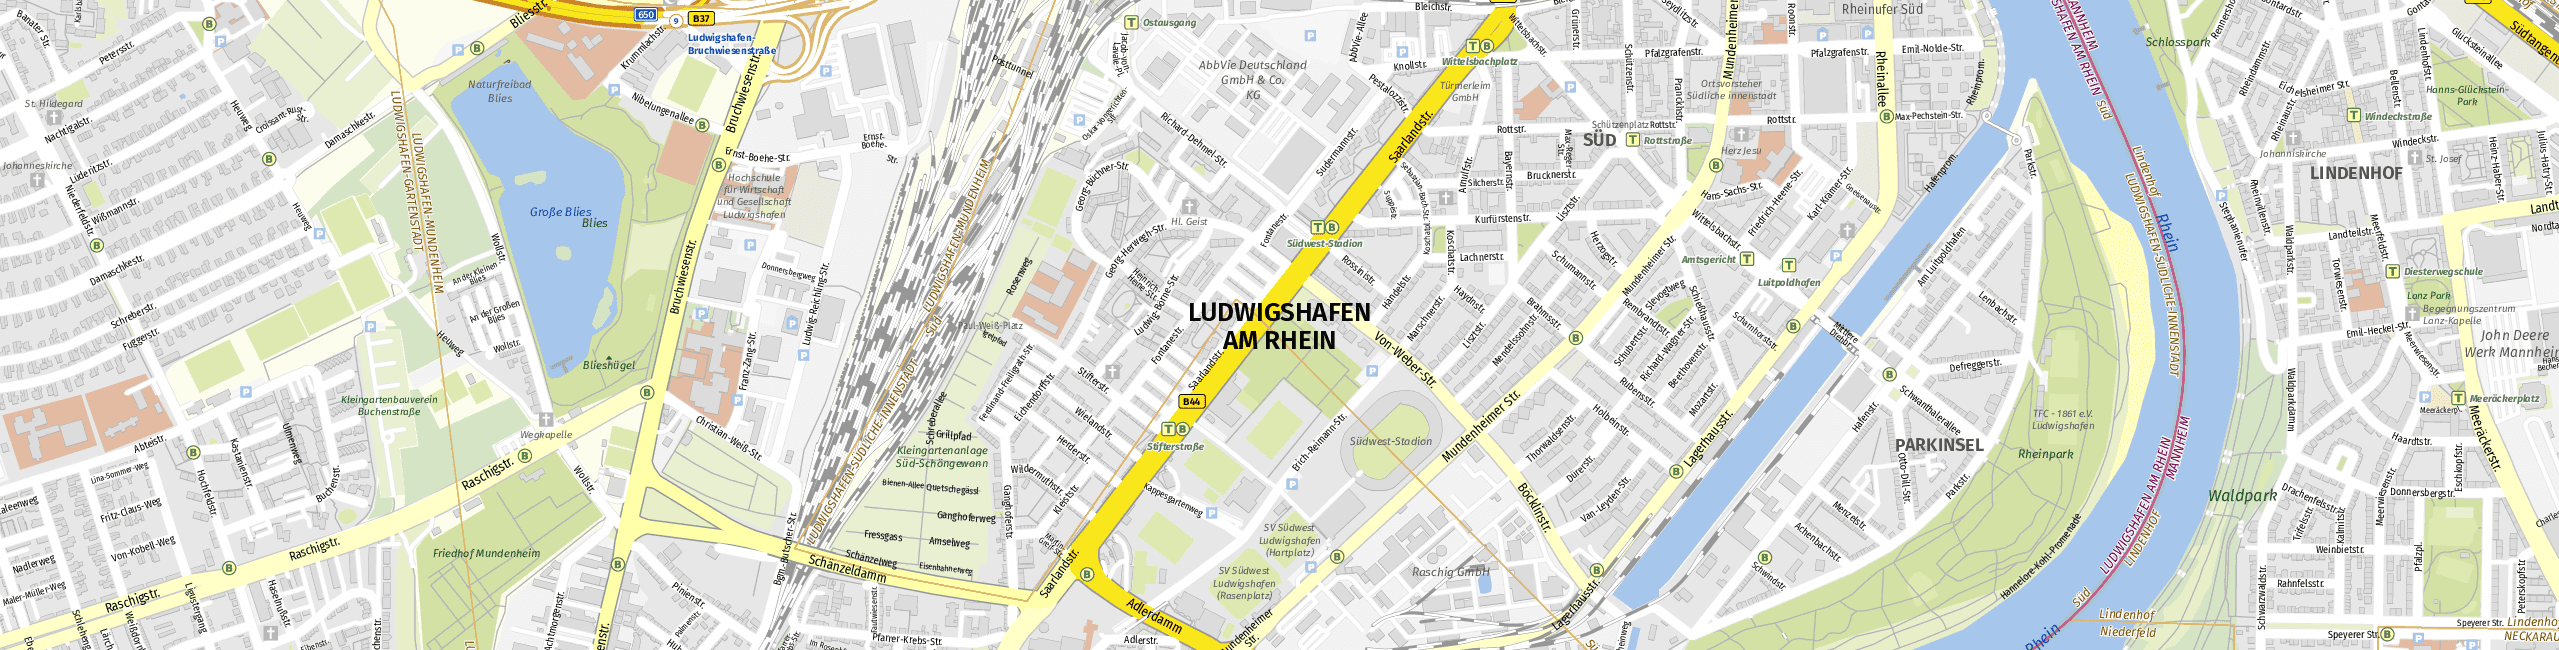 Stadtplan Ludwigshafen am Rhein zum Downloaden.